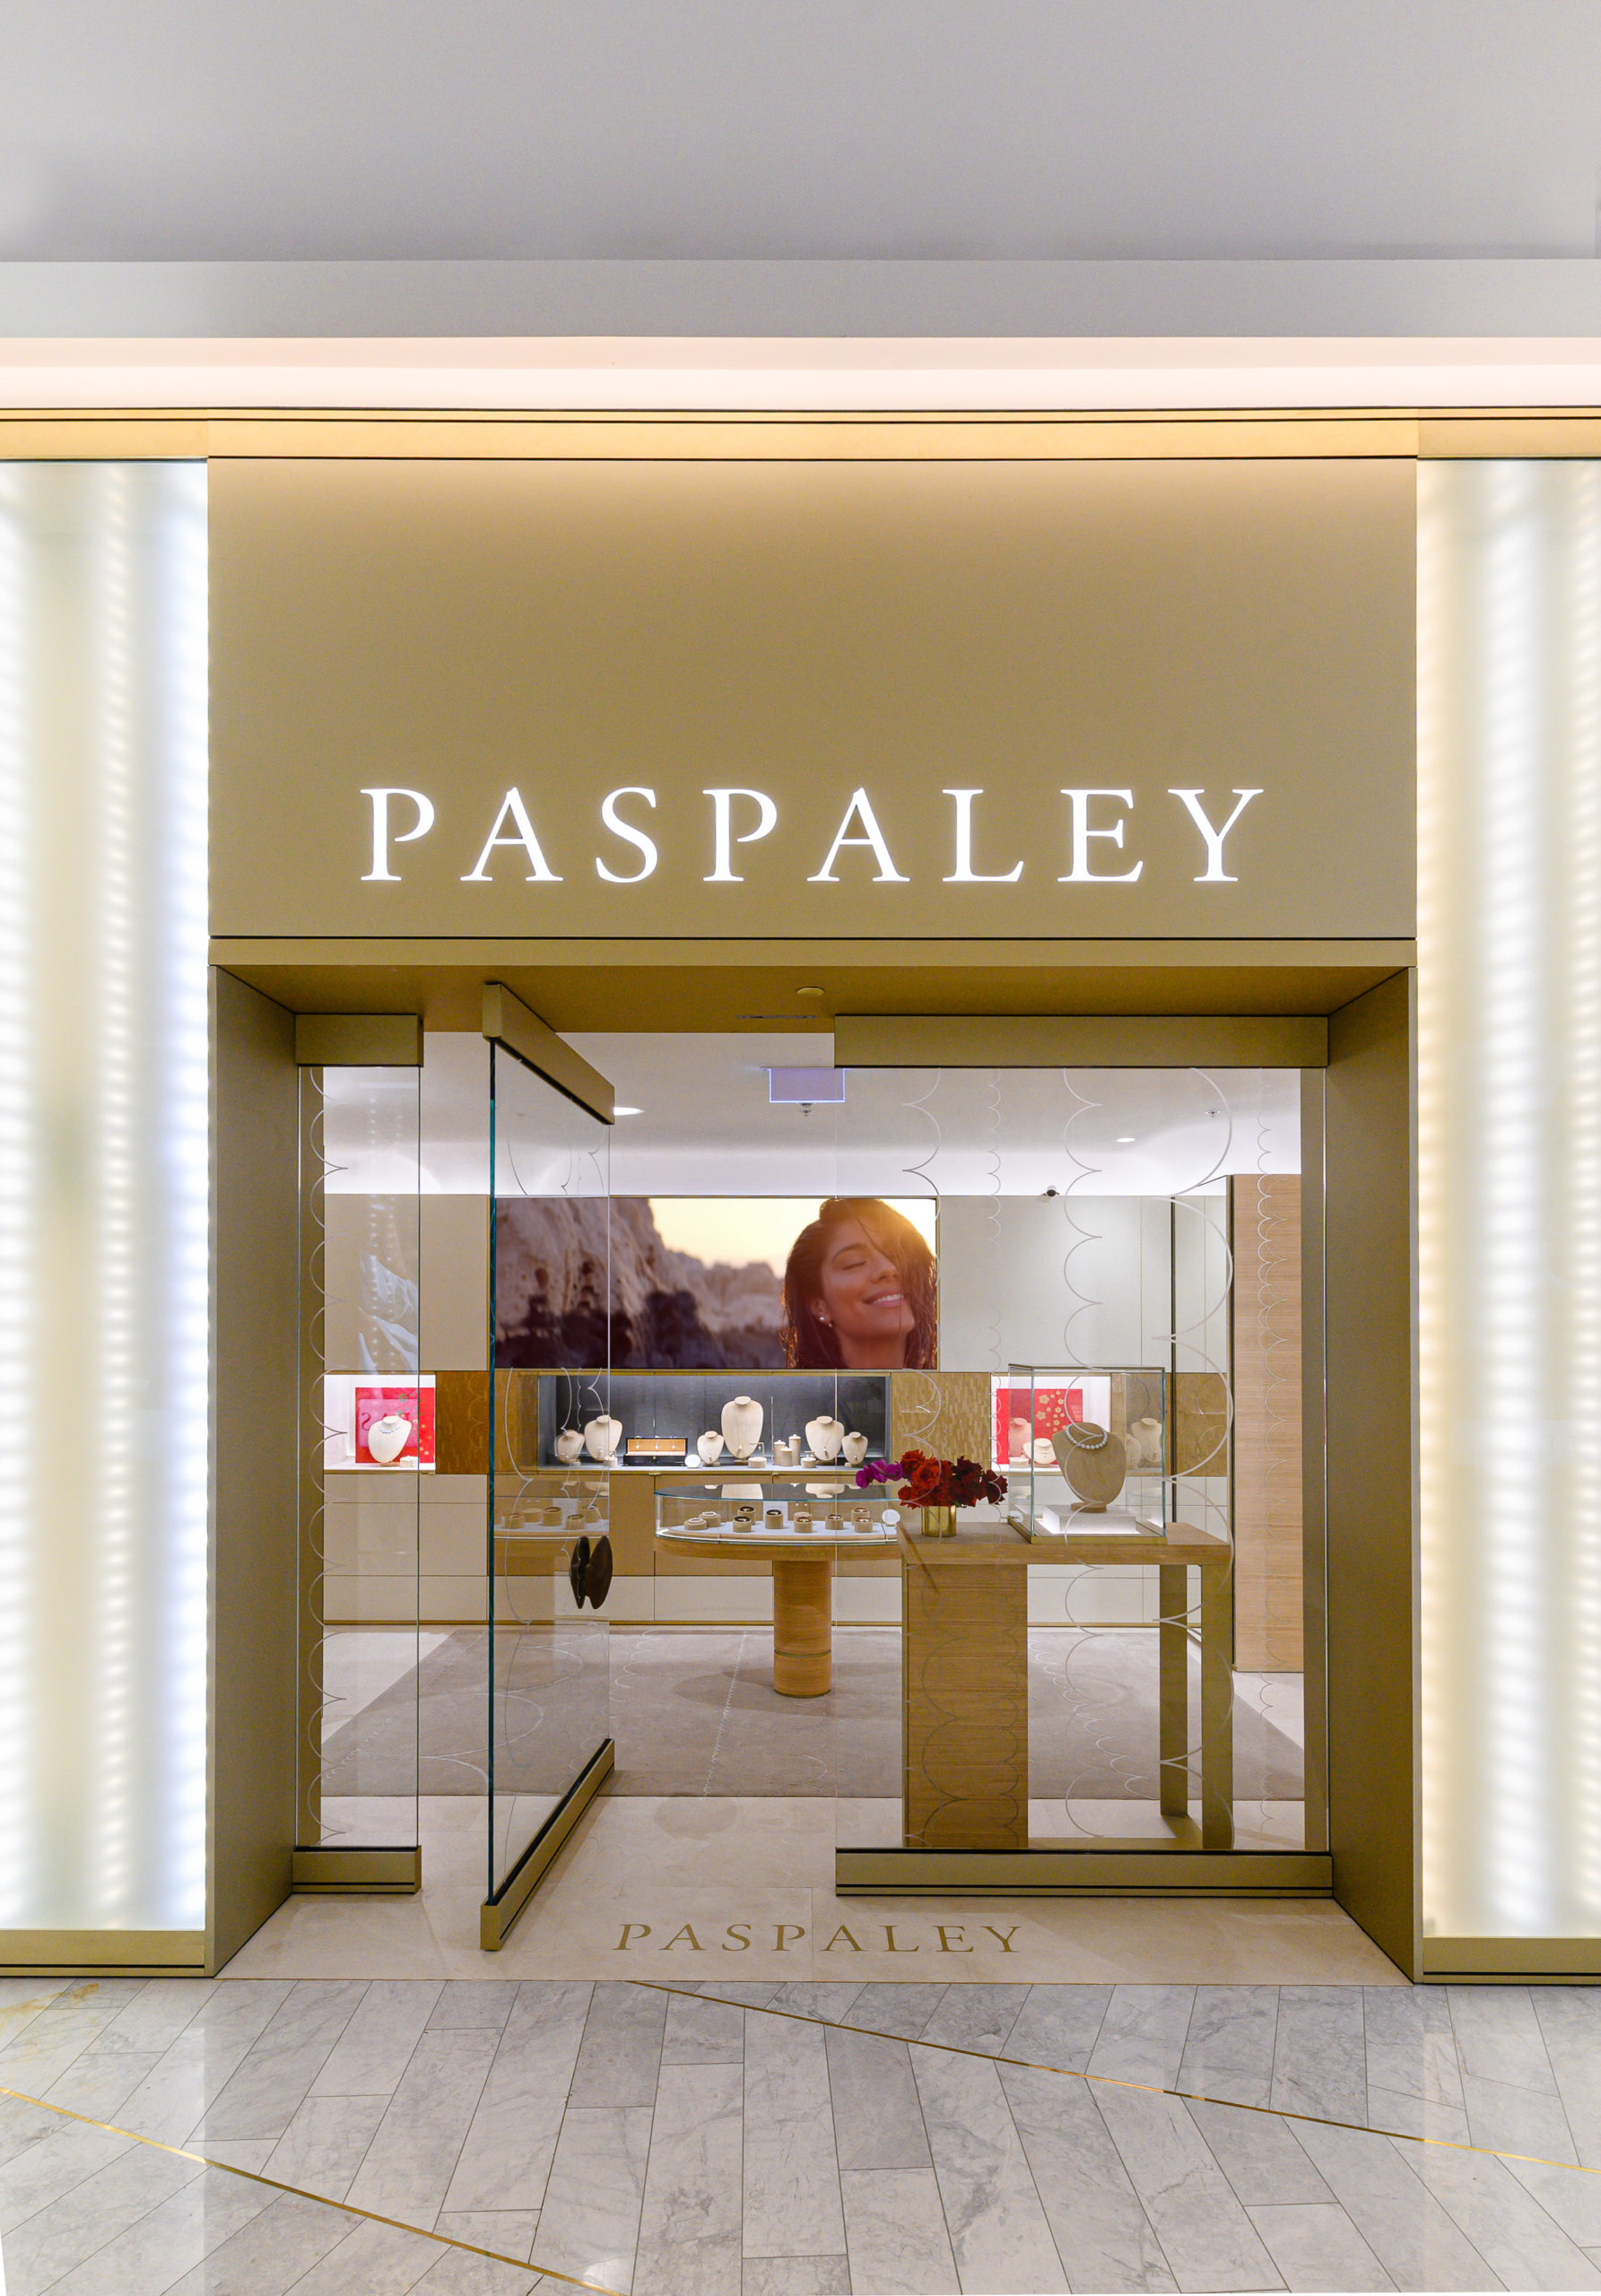 Paspaley Boutique Crown Sydney 28.01.2021 ELT 8682 Edit